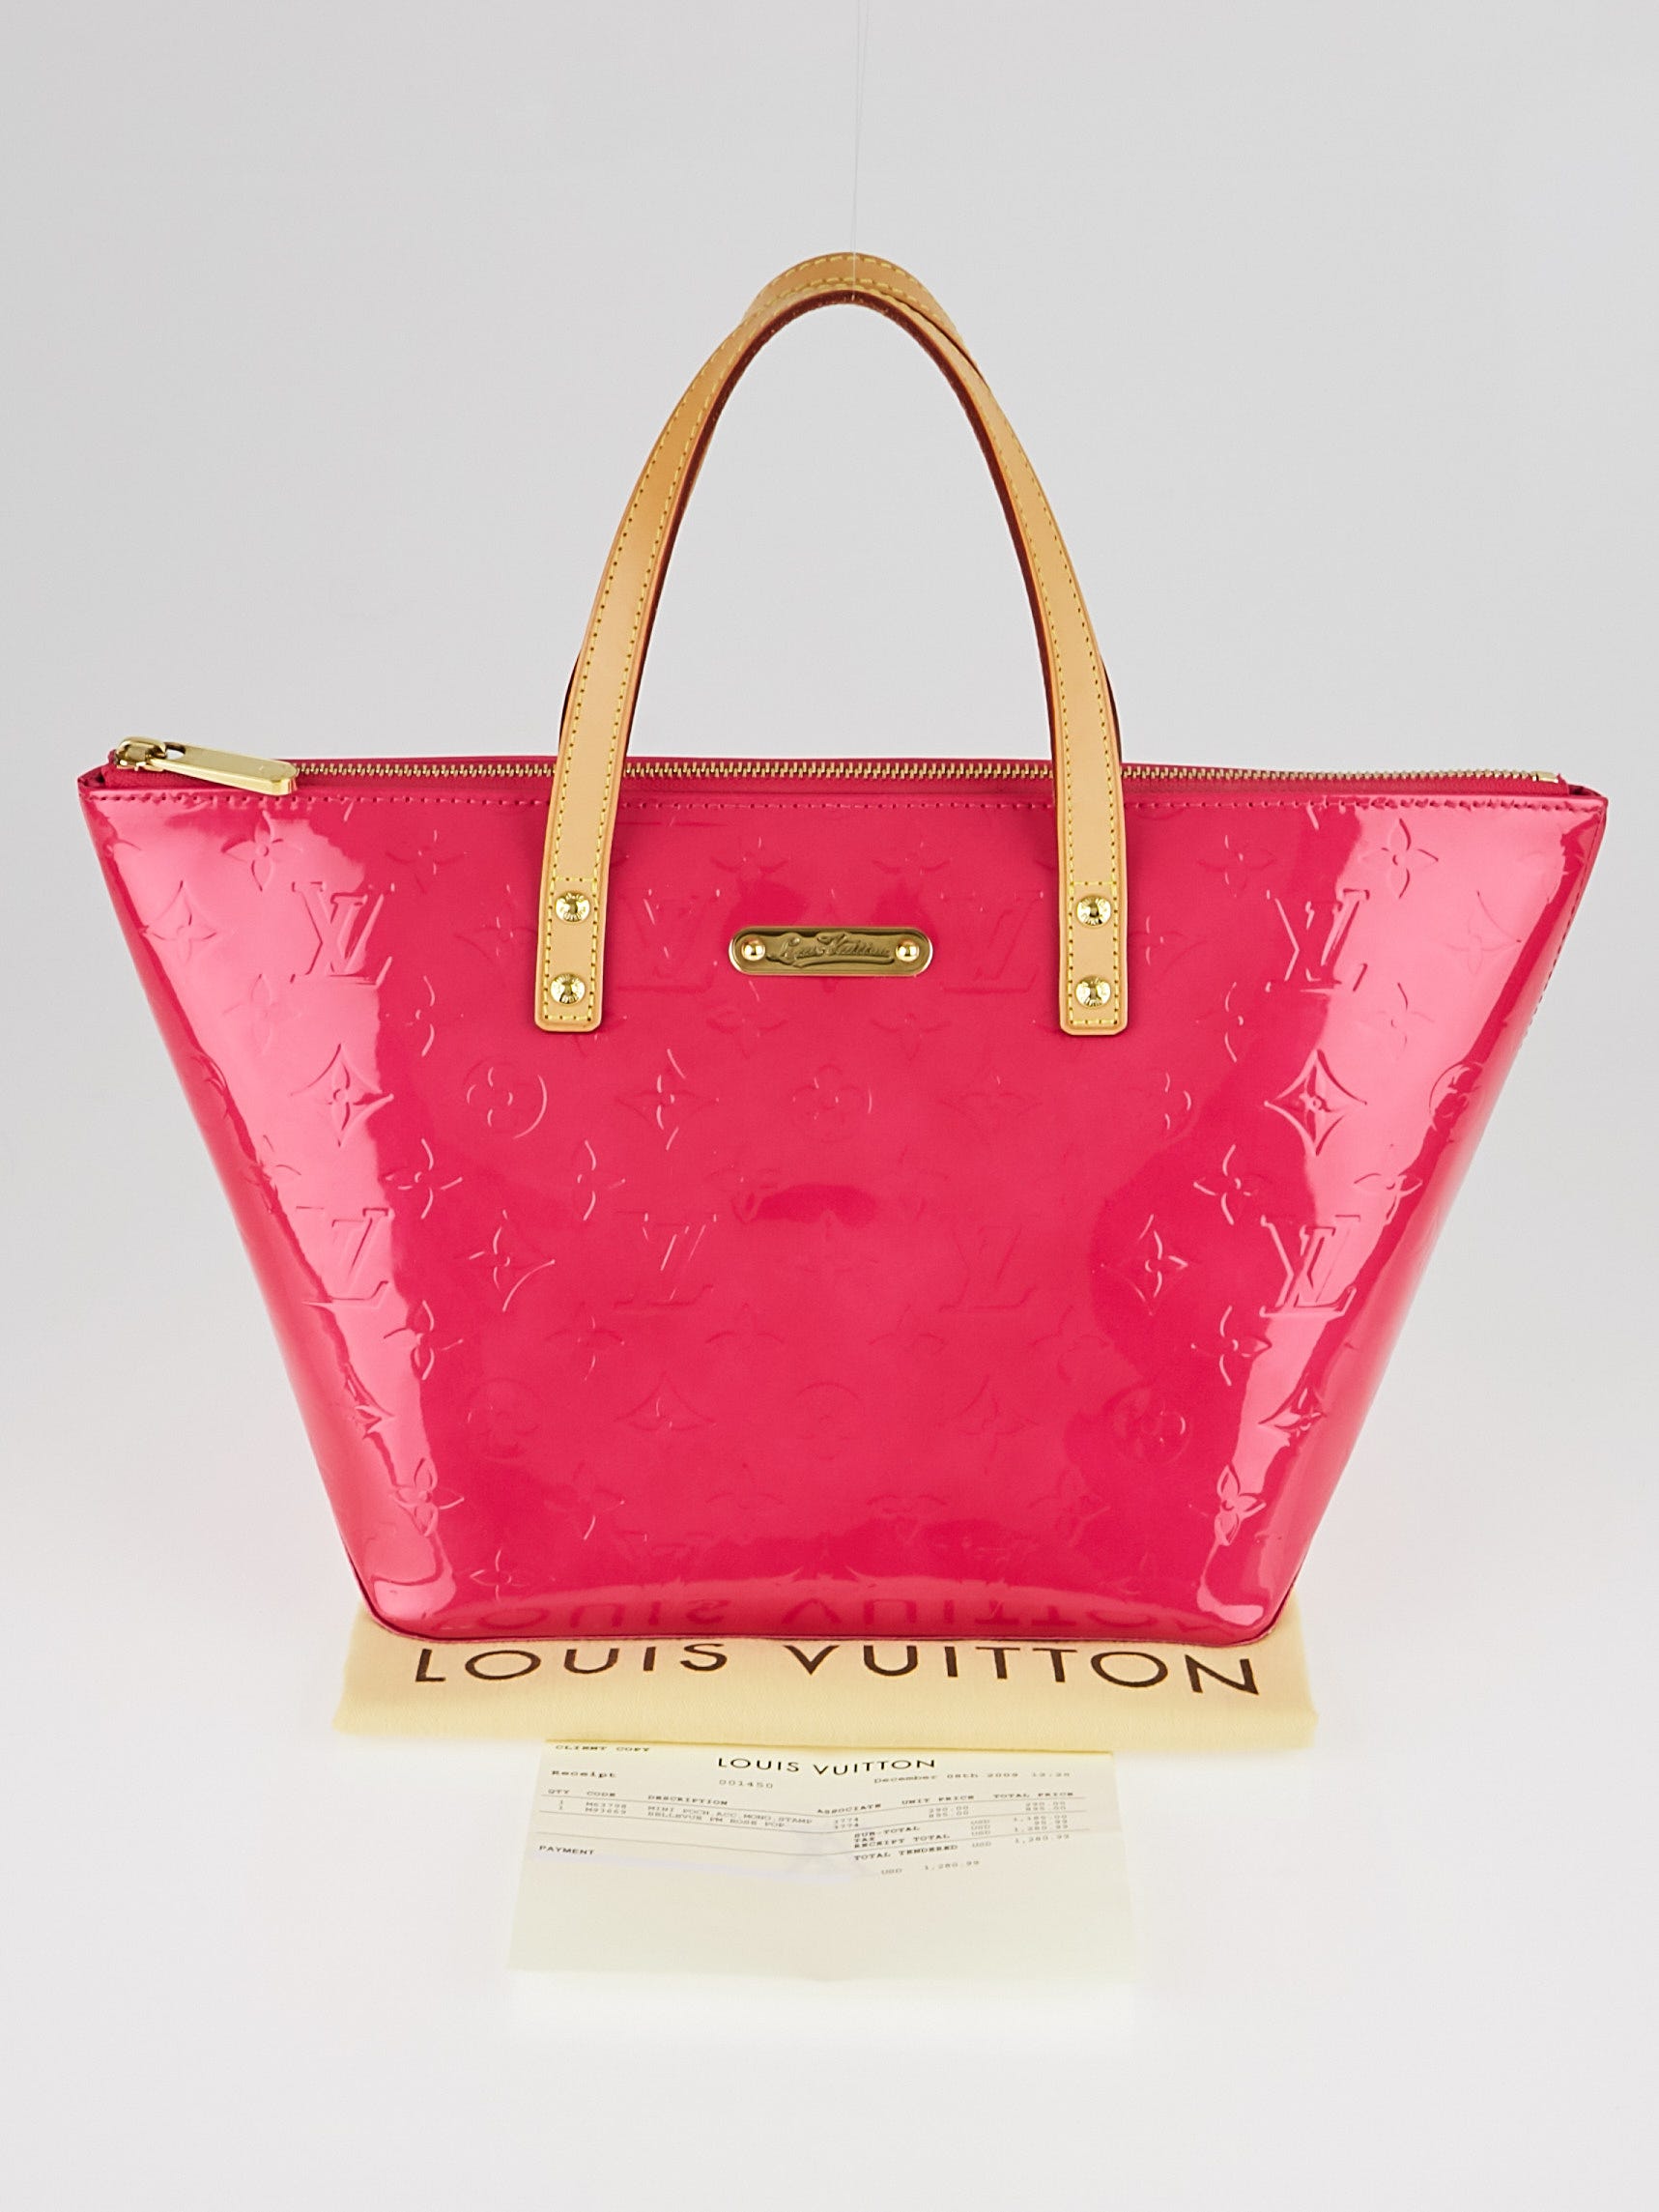 Louis Vuitton Louis Vuitton Bellevue PM Red Vernis Leather Handbag